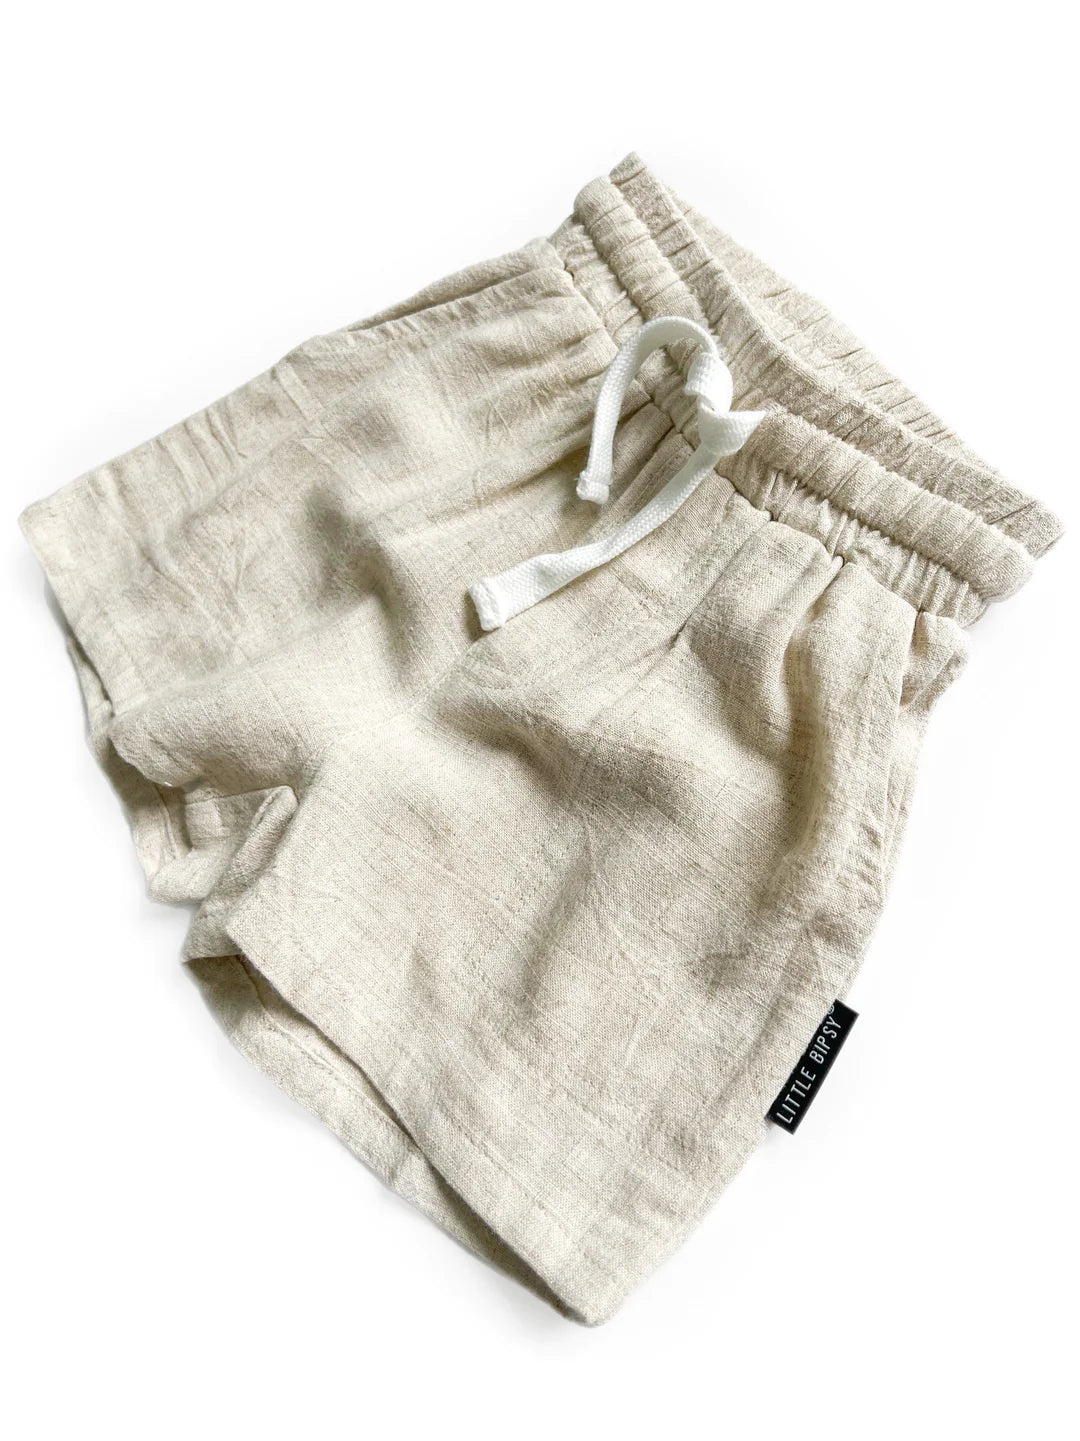 Linen Shorts - Sand